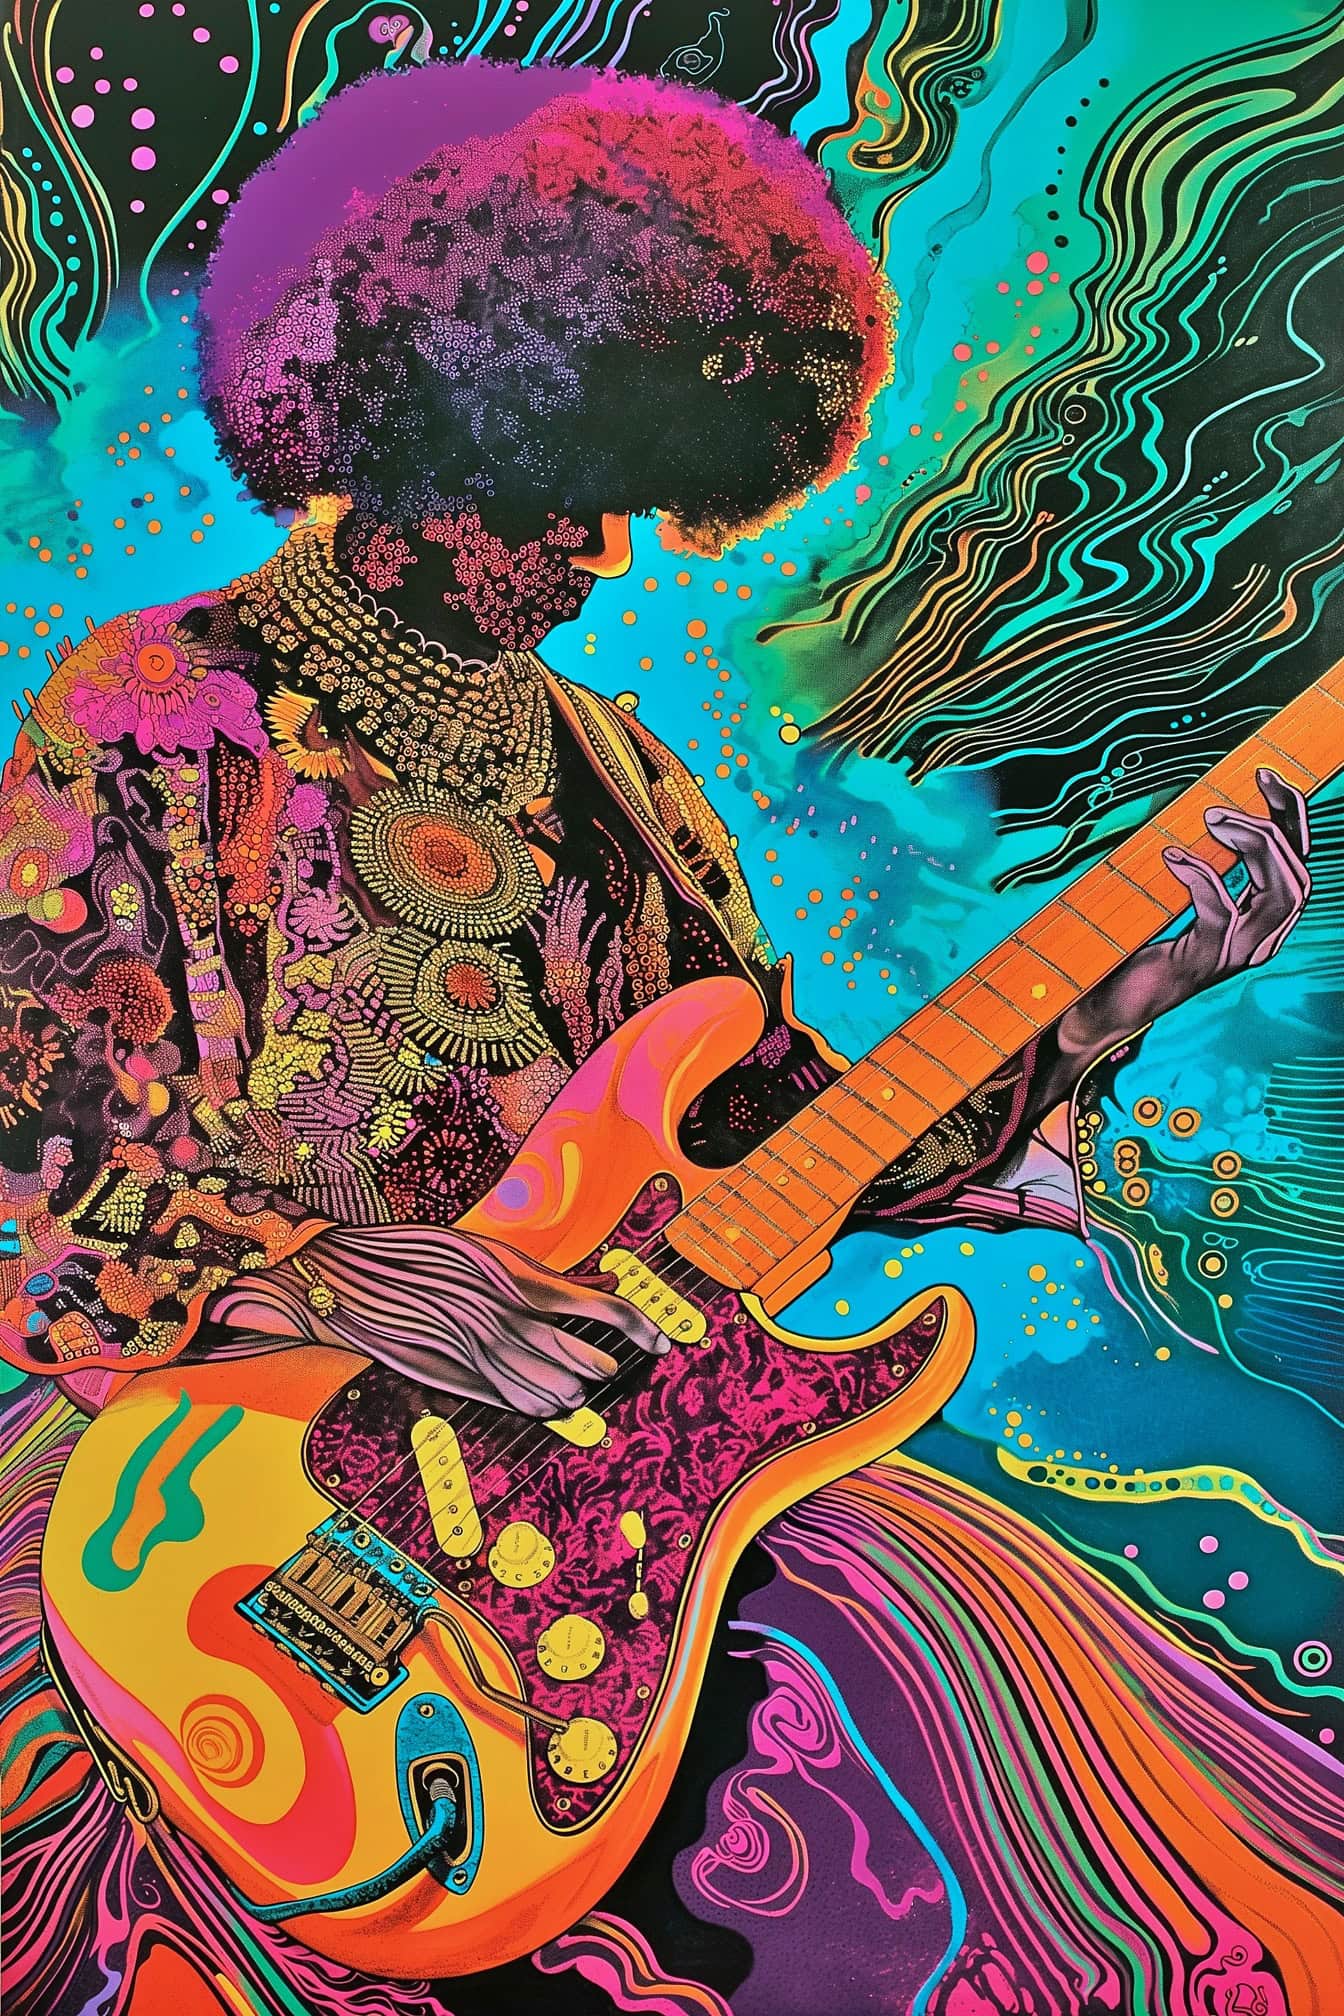 지미 헨드릭스(Jimi Hendrix)가 사이키델릭과 팝 아트 스타일이 혼합된 기타를 연주하는 최면 삽화